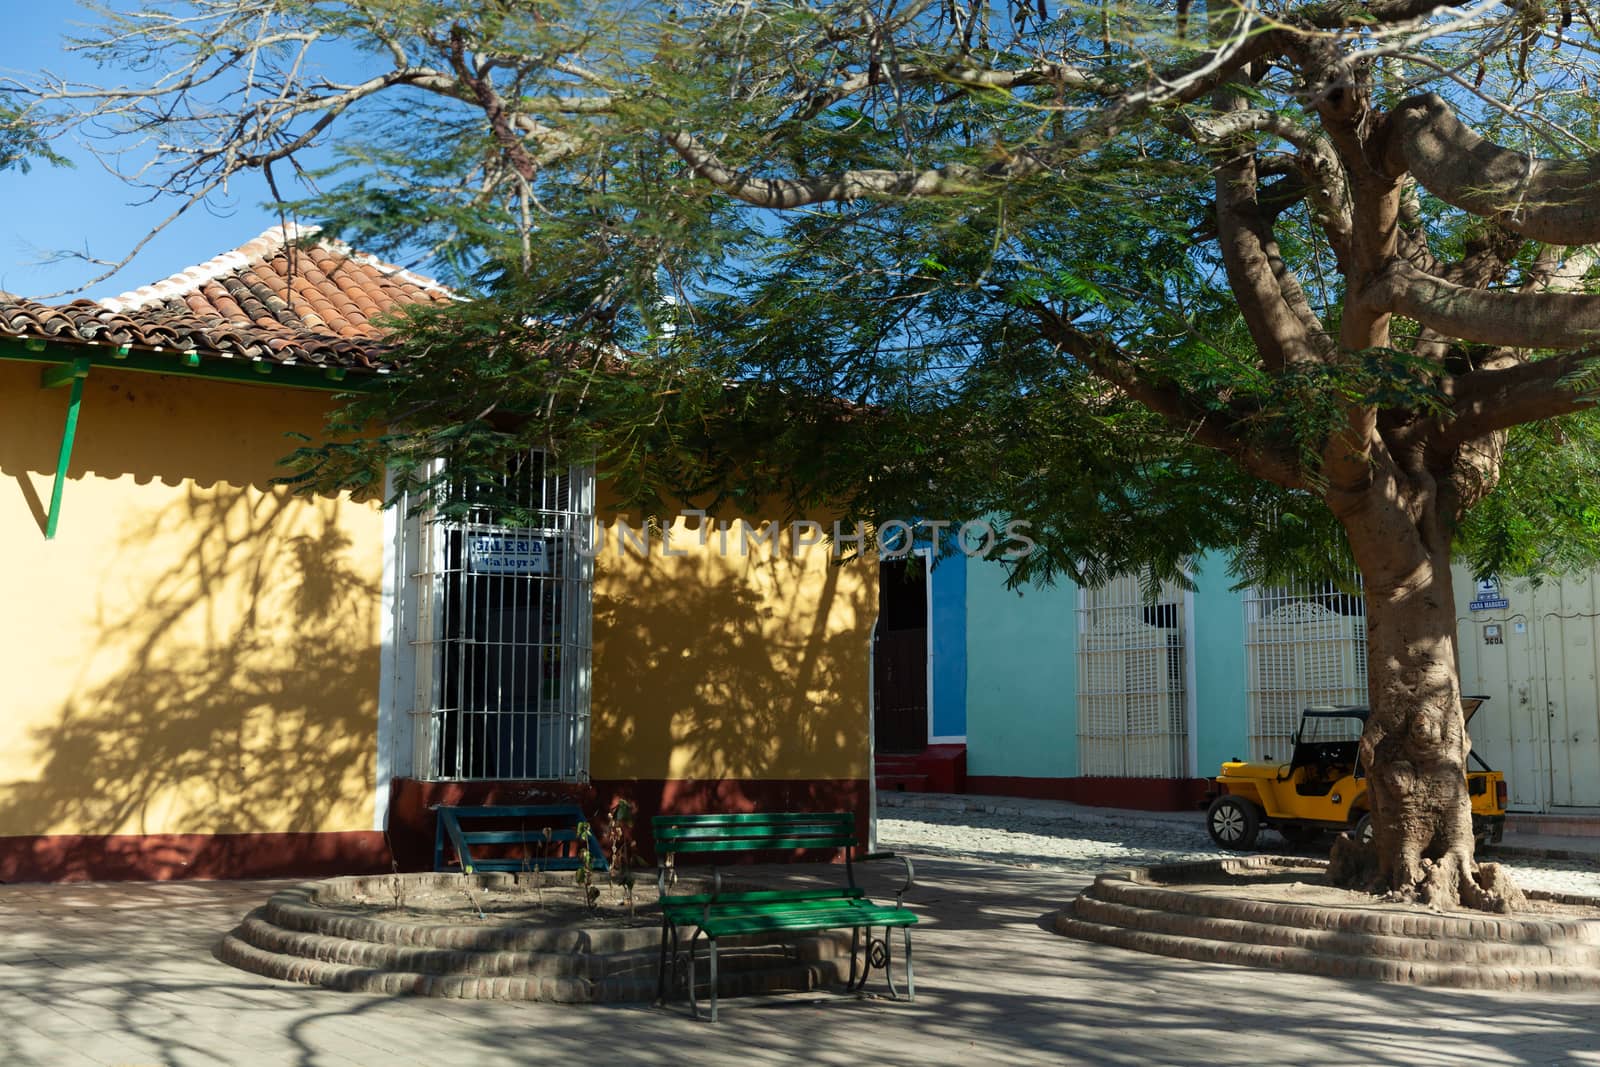 Plazuela del Cristo, Trinidad, Cuba by vlad-m